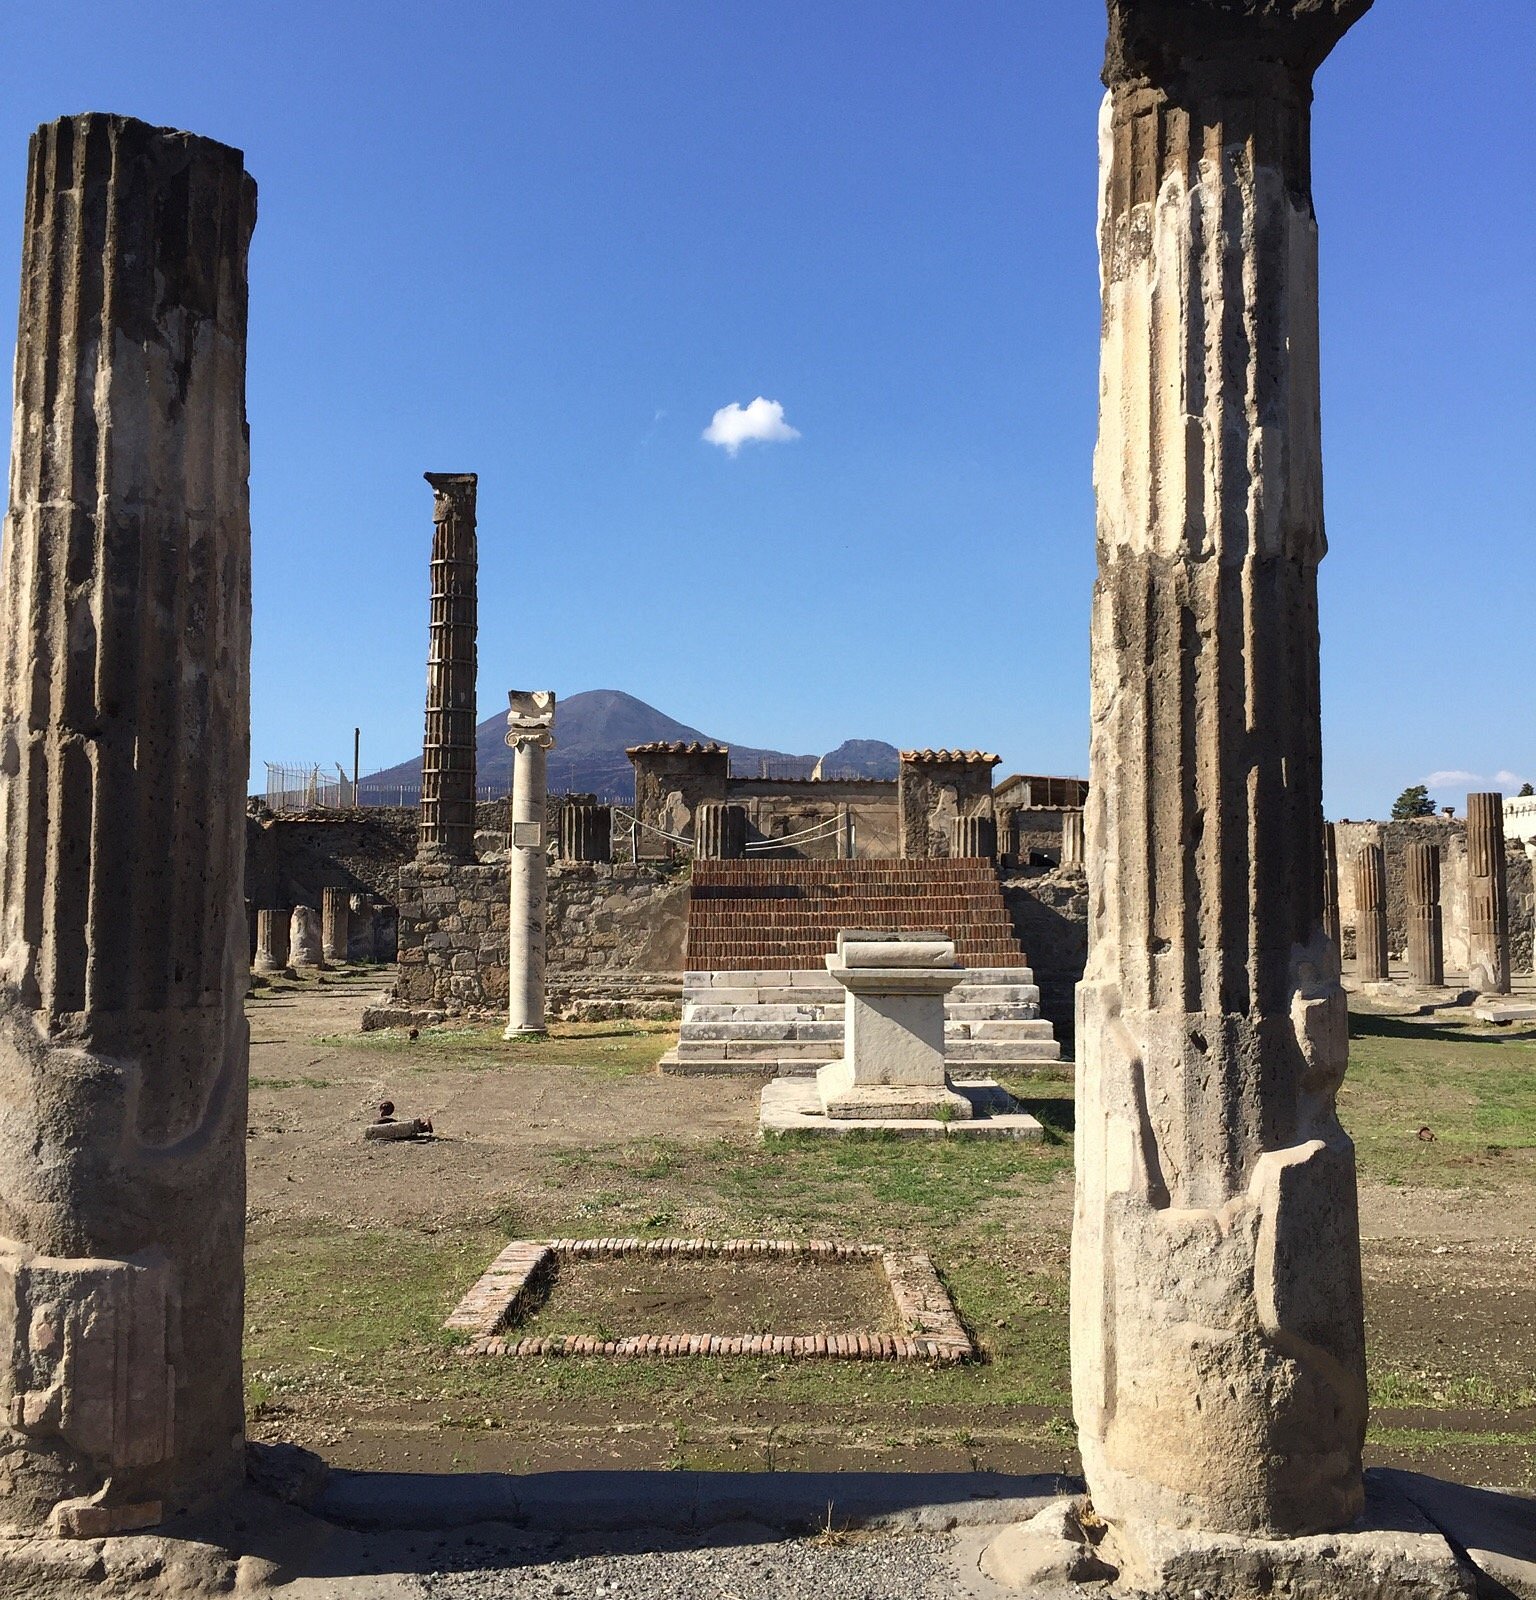 mondo guide tours of pompeii